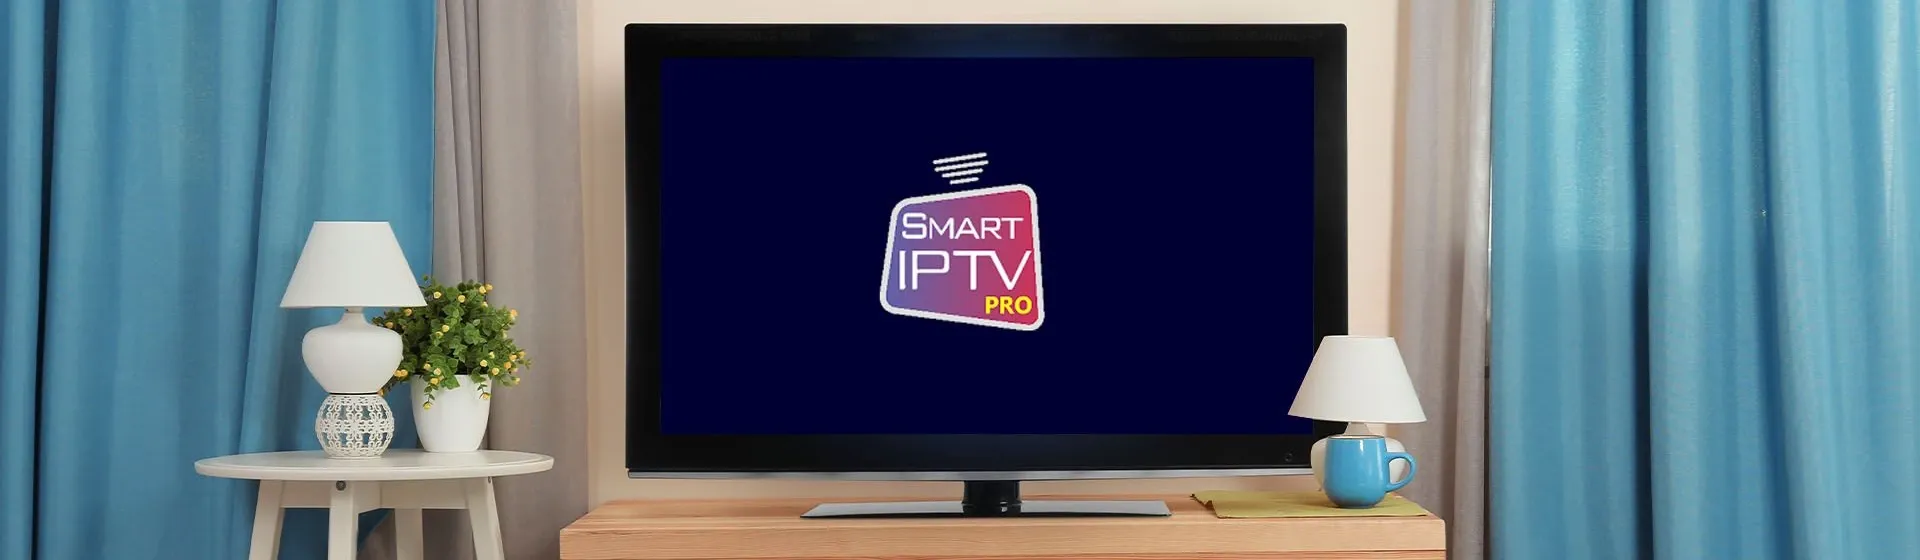 Capa do post: O que é IPTV e como funciona? Saiba mais sobre essa tecnologia